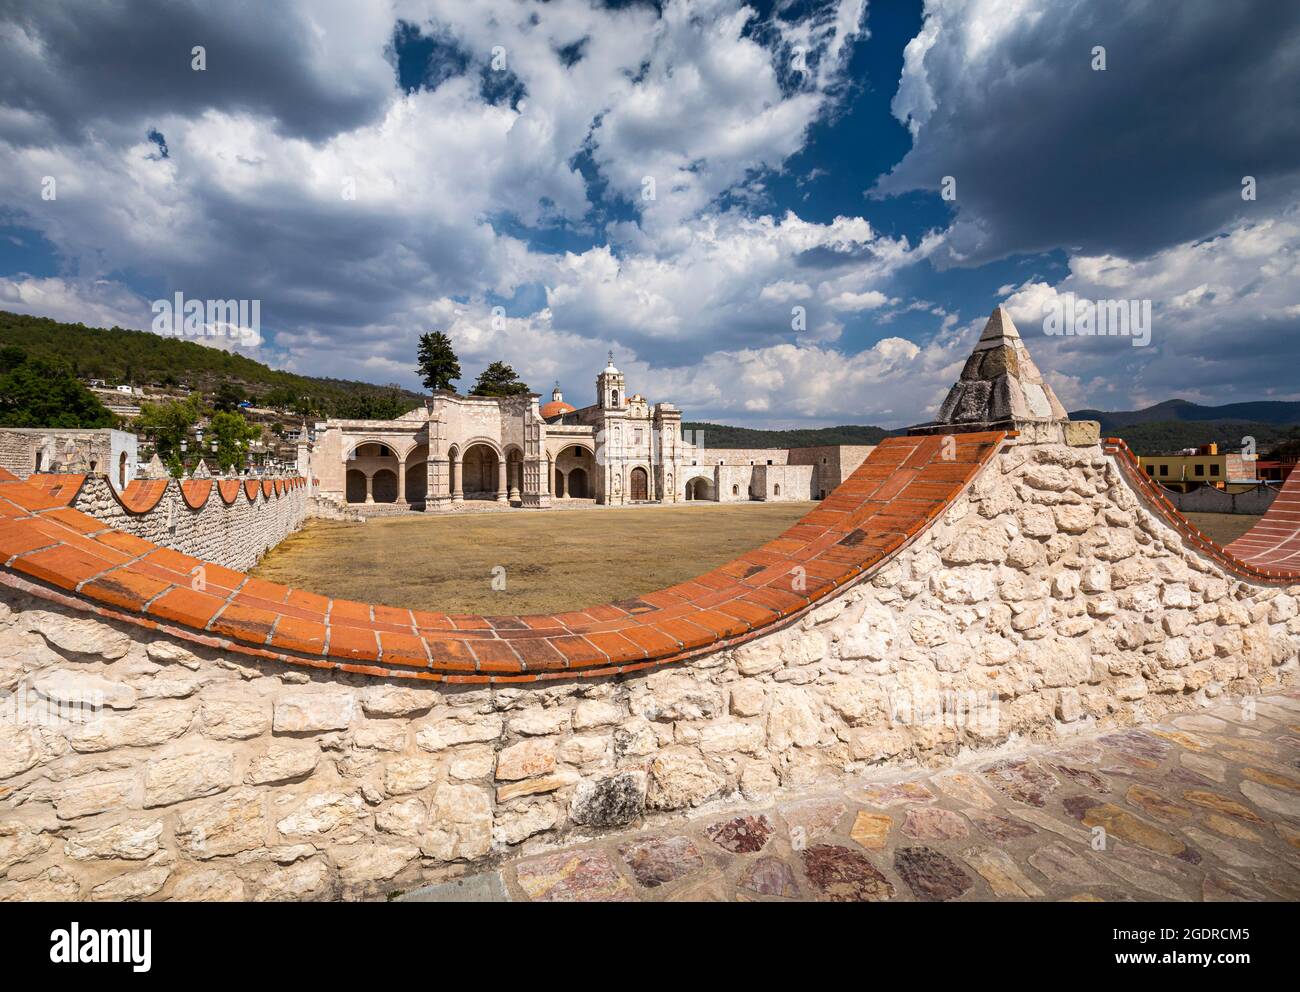 Tempel und ehemaliges Kloster von San Pedro y San Pablo mit seiner capilla abierta oder offener Kapelle in Teposcolula, Oaxaca, Mexiko. Stockfoto